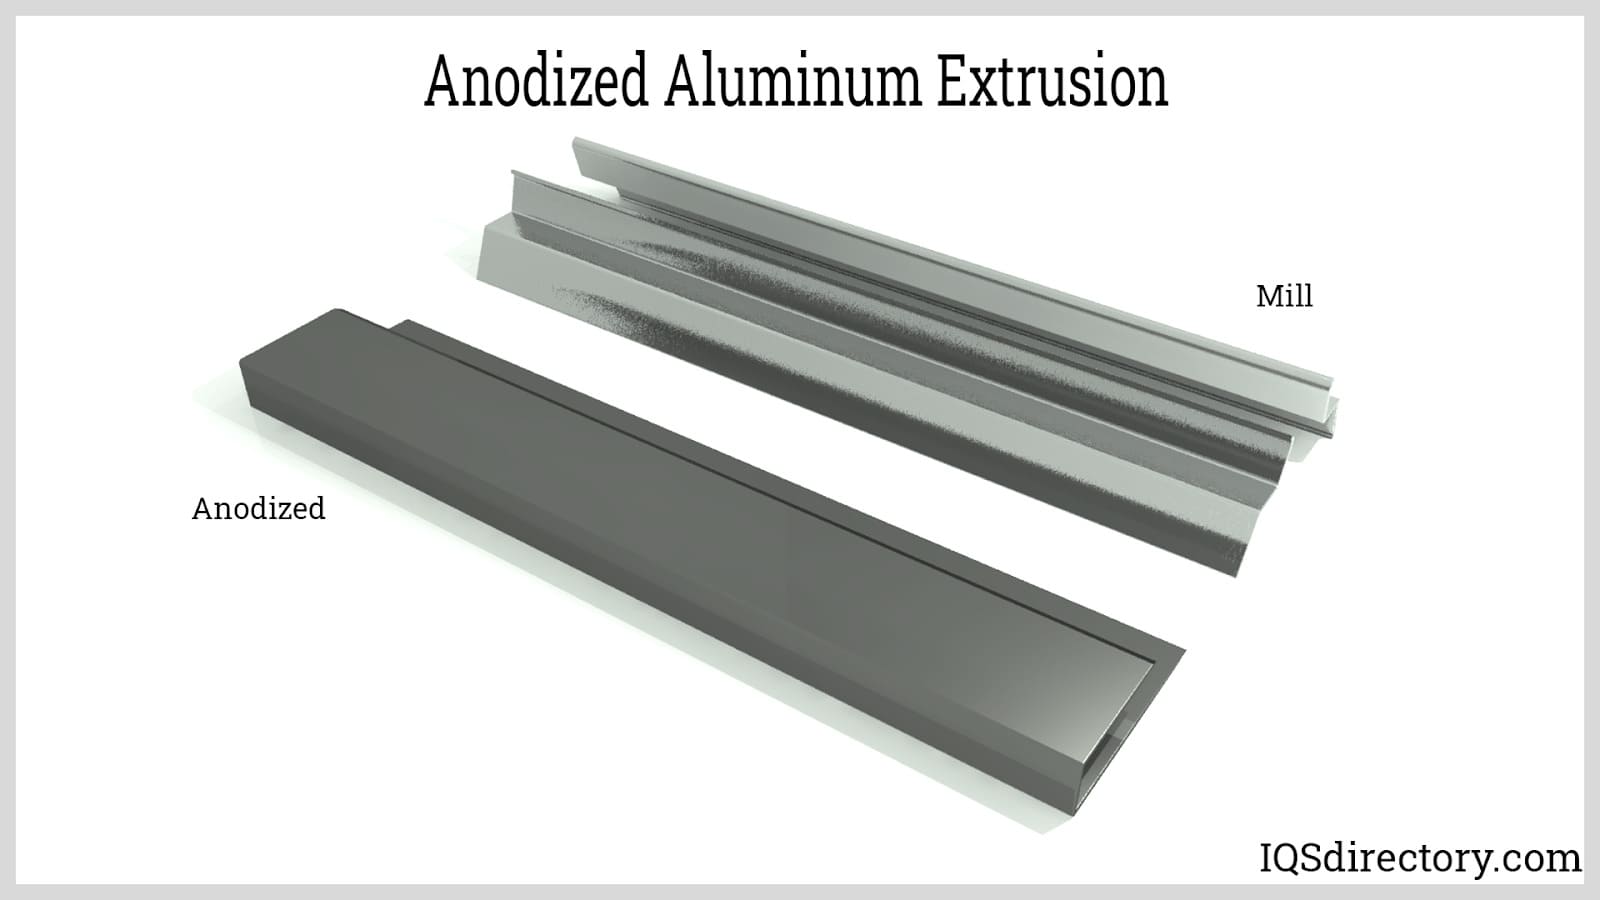 Anodized Aluminum Extrusion